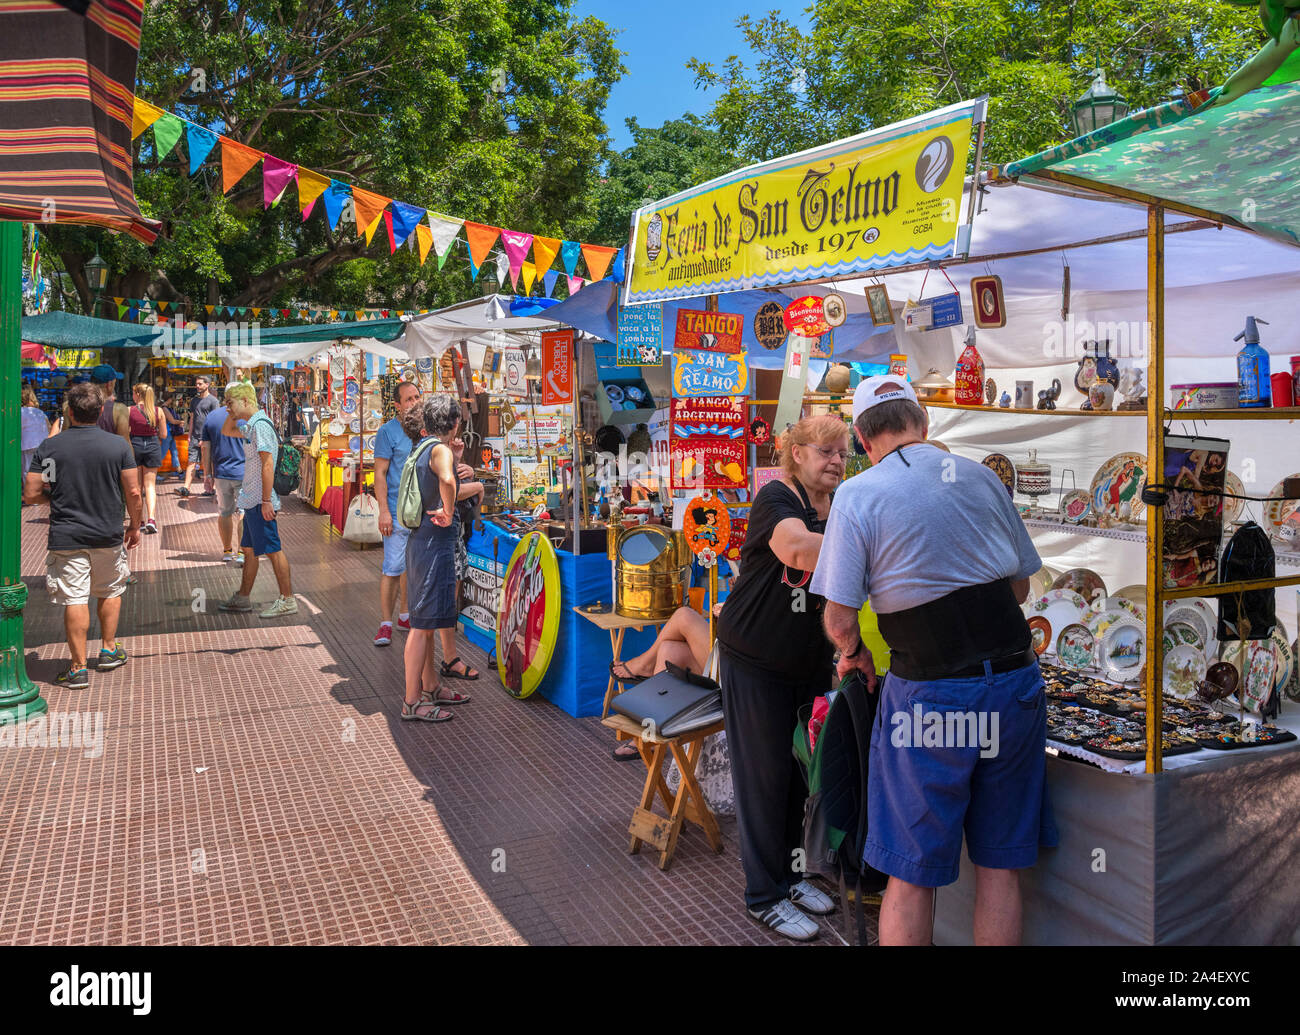 The Feria de San Telmo, a Sunday market in the Plaza Dorrego, San Telmo, Buenos Aires, Argentina Stock Photo